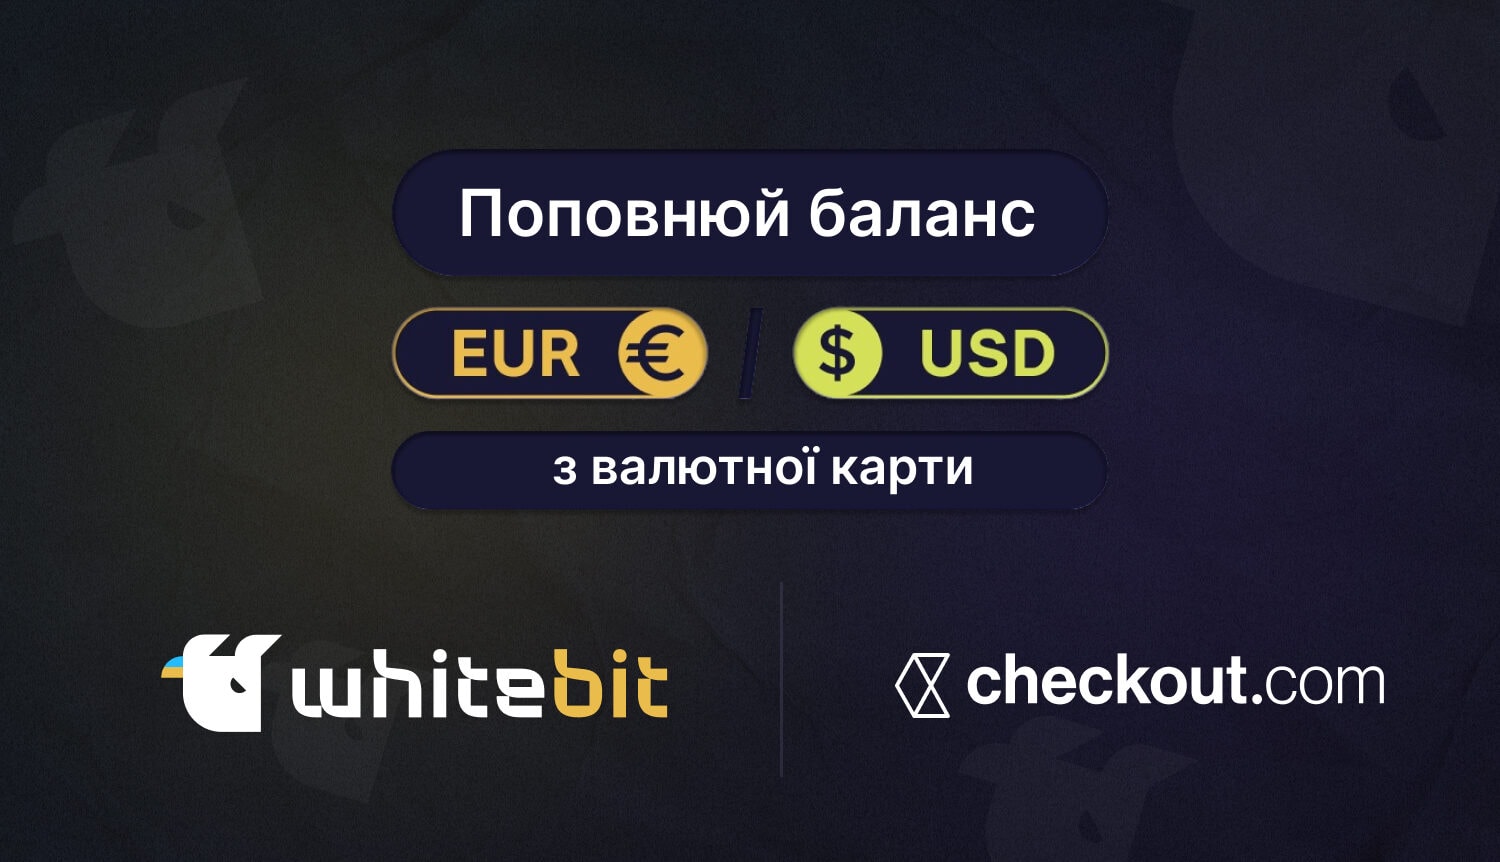 Поповнити баланс в EUR і USD на WhiteBIT стало ще простіше. Головний колаж новини.